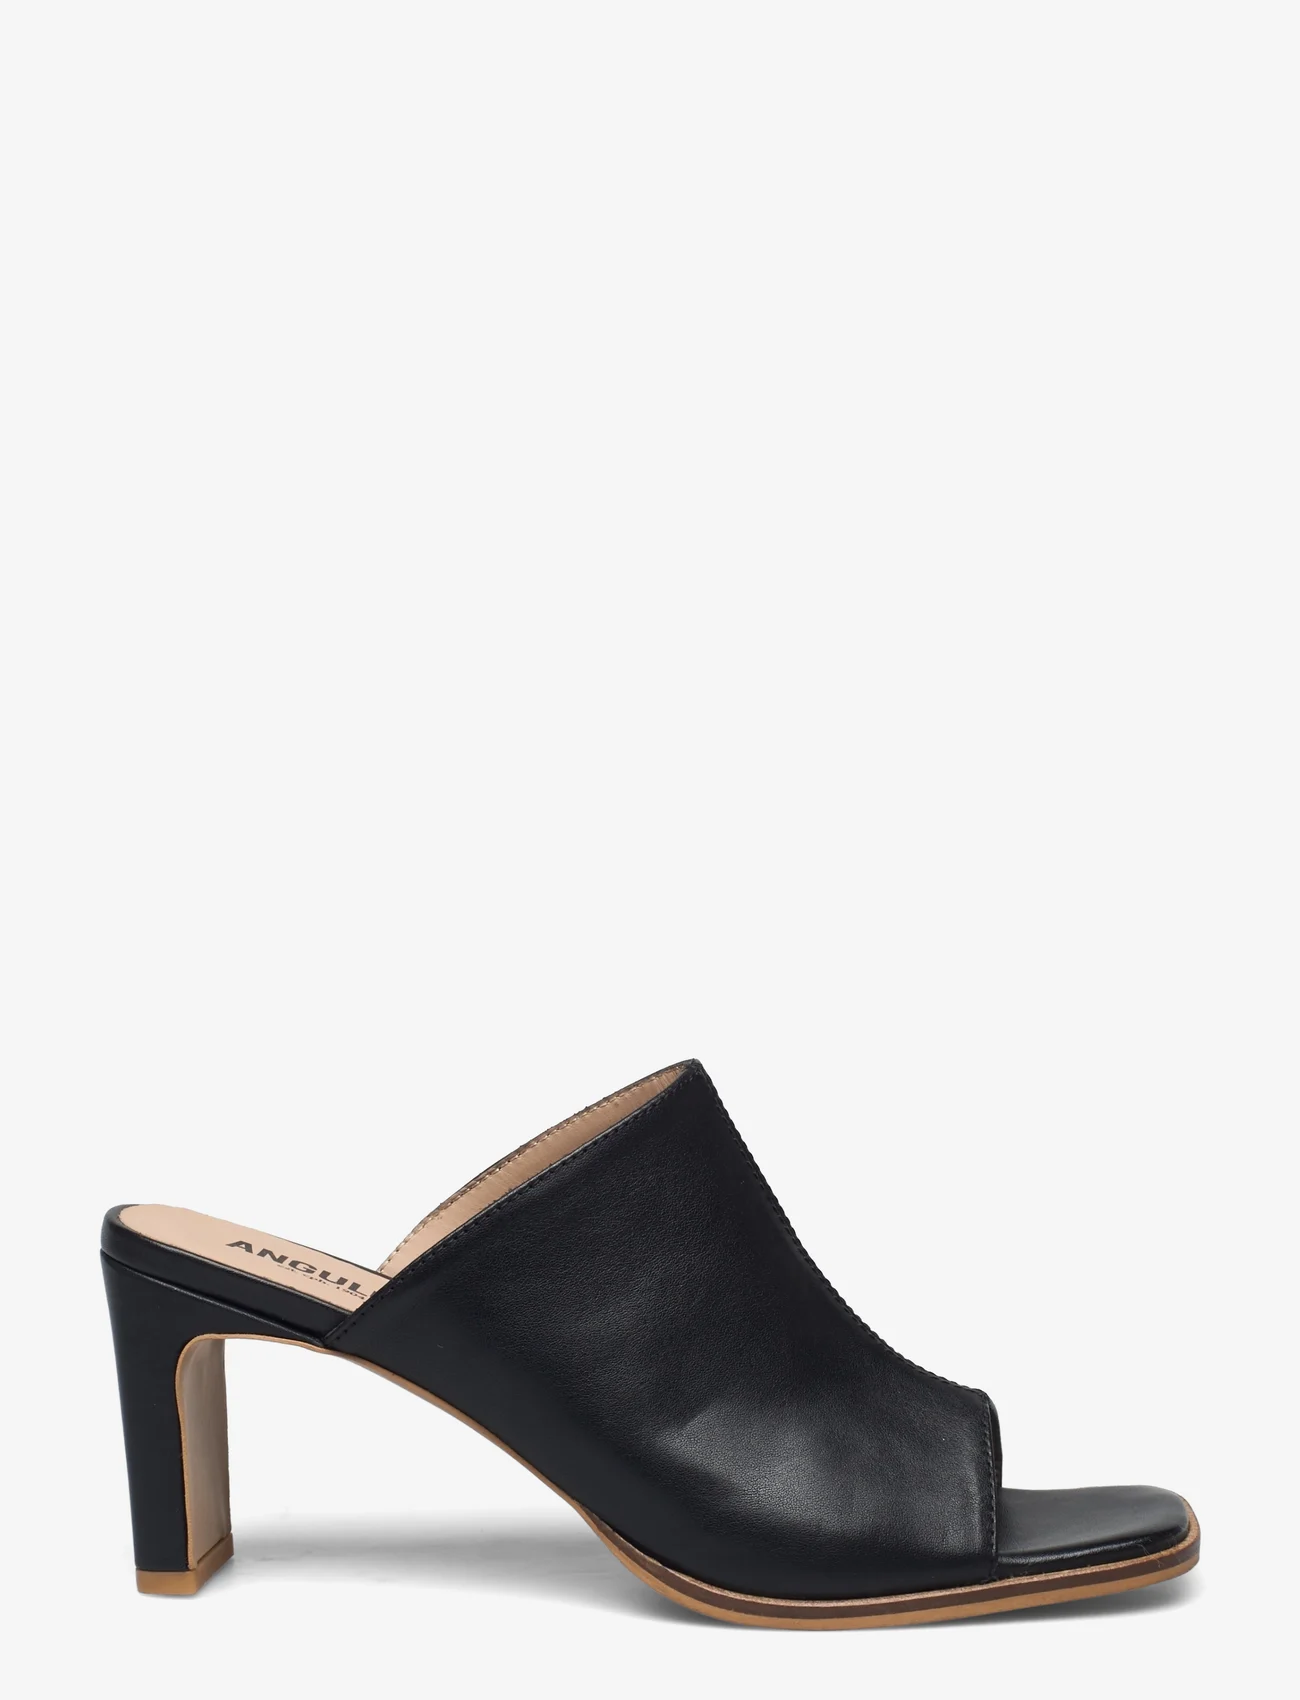 ANGULUS - Sandals - Block heels - basutės su kulnu - 1604 black - 1